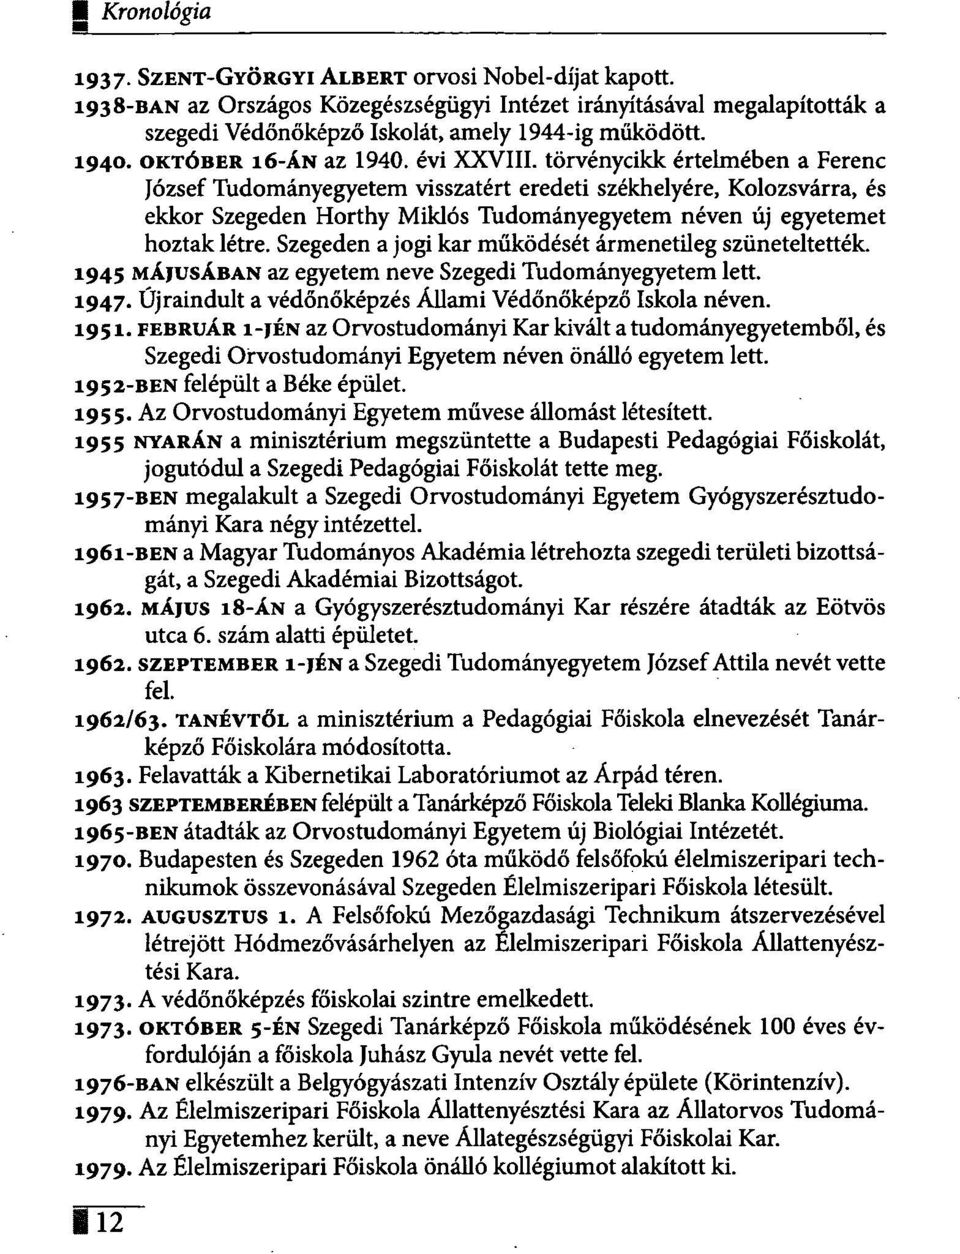 törvénycikk értelmében a Ferenc József Tudományegyetem visszatért eredeti székhelyére, Kolozsvárra, és ekkor Szegeden Horthy Miklós Tudományegyetem néven új egyetemet hoztak létre.